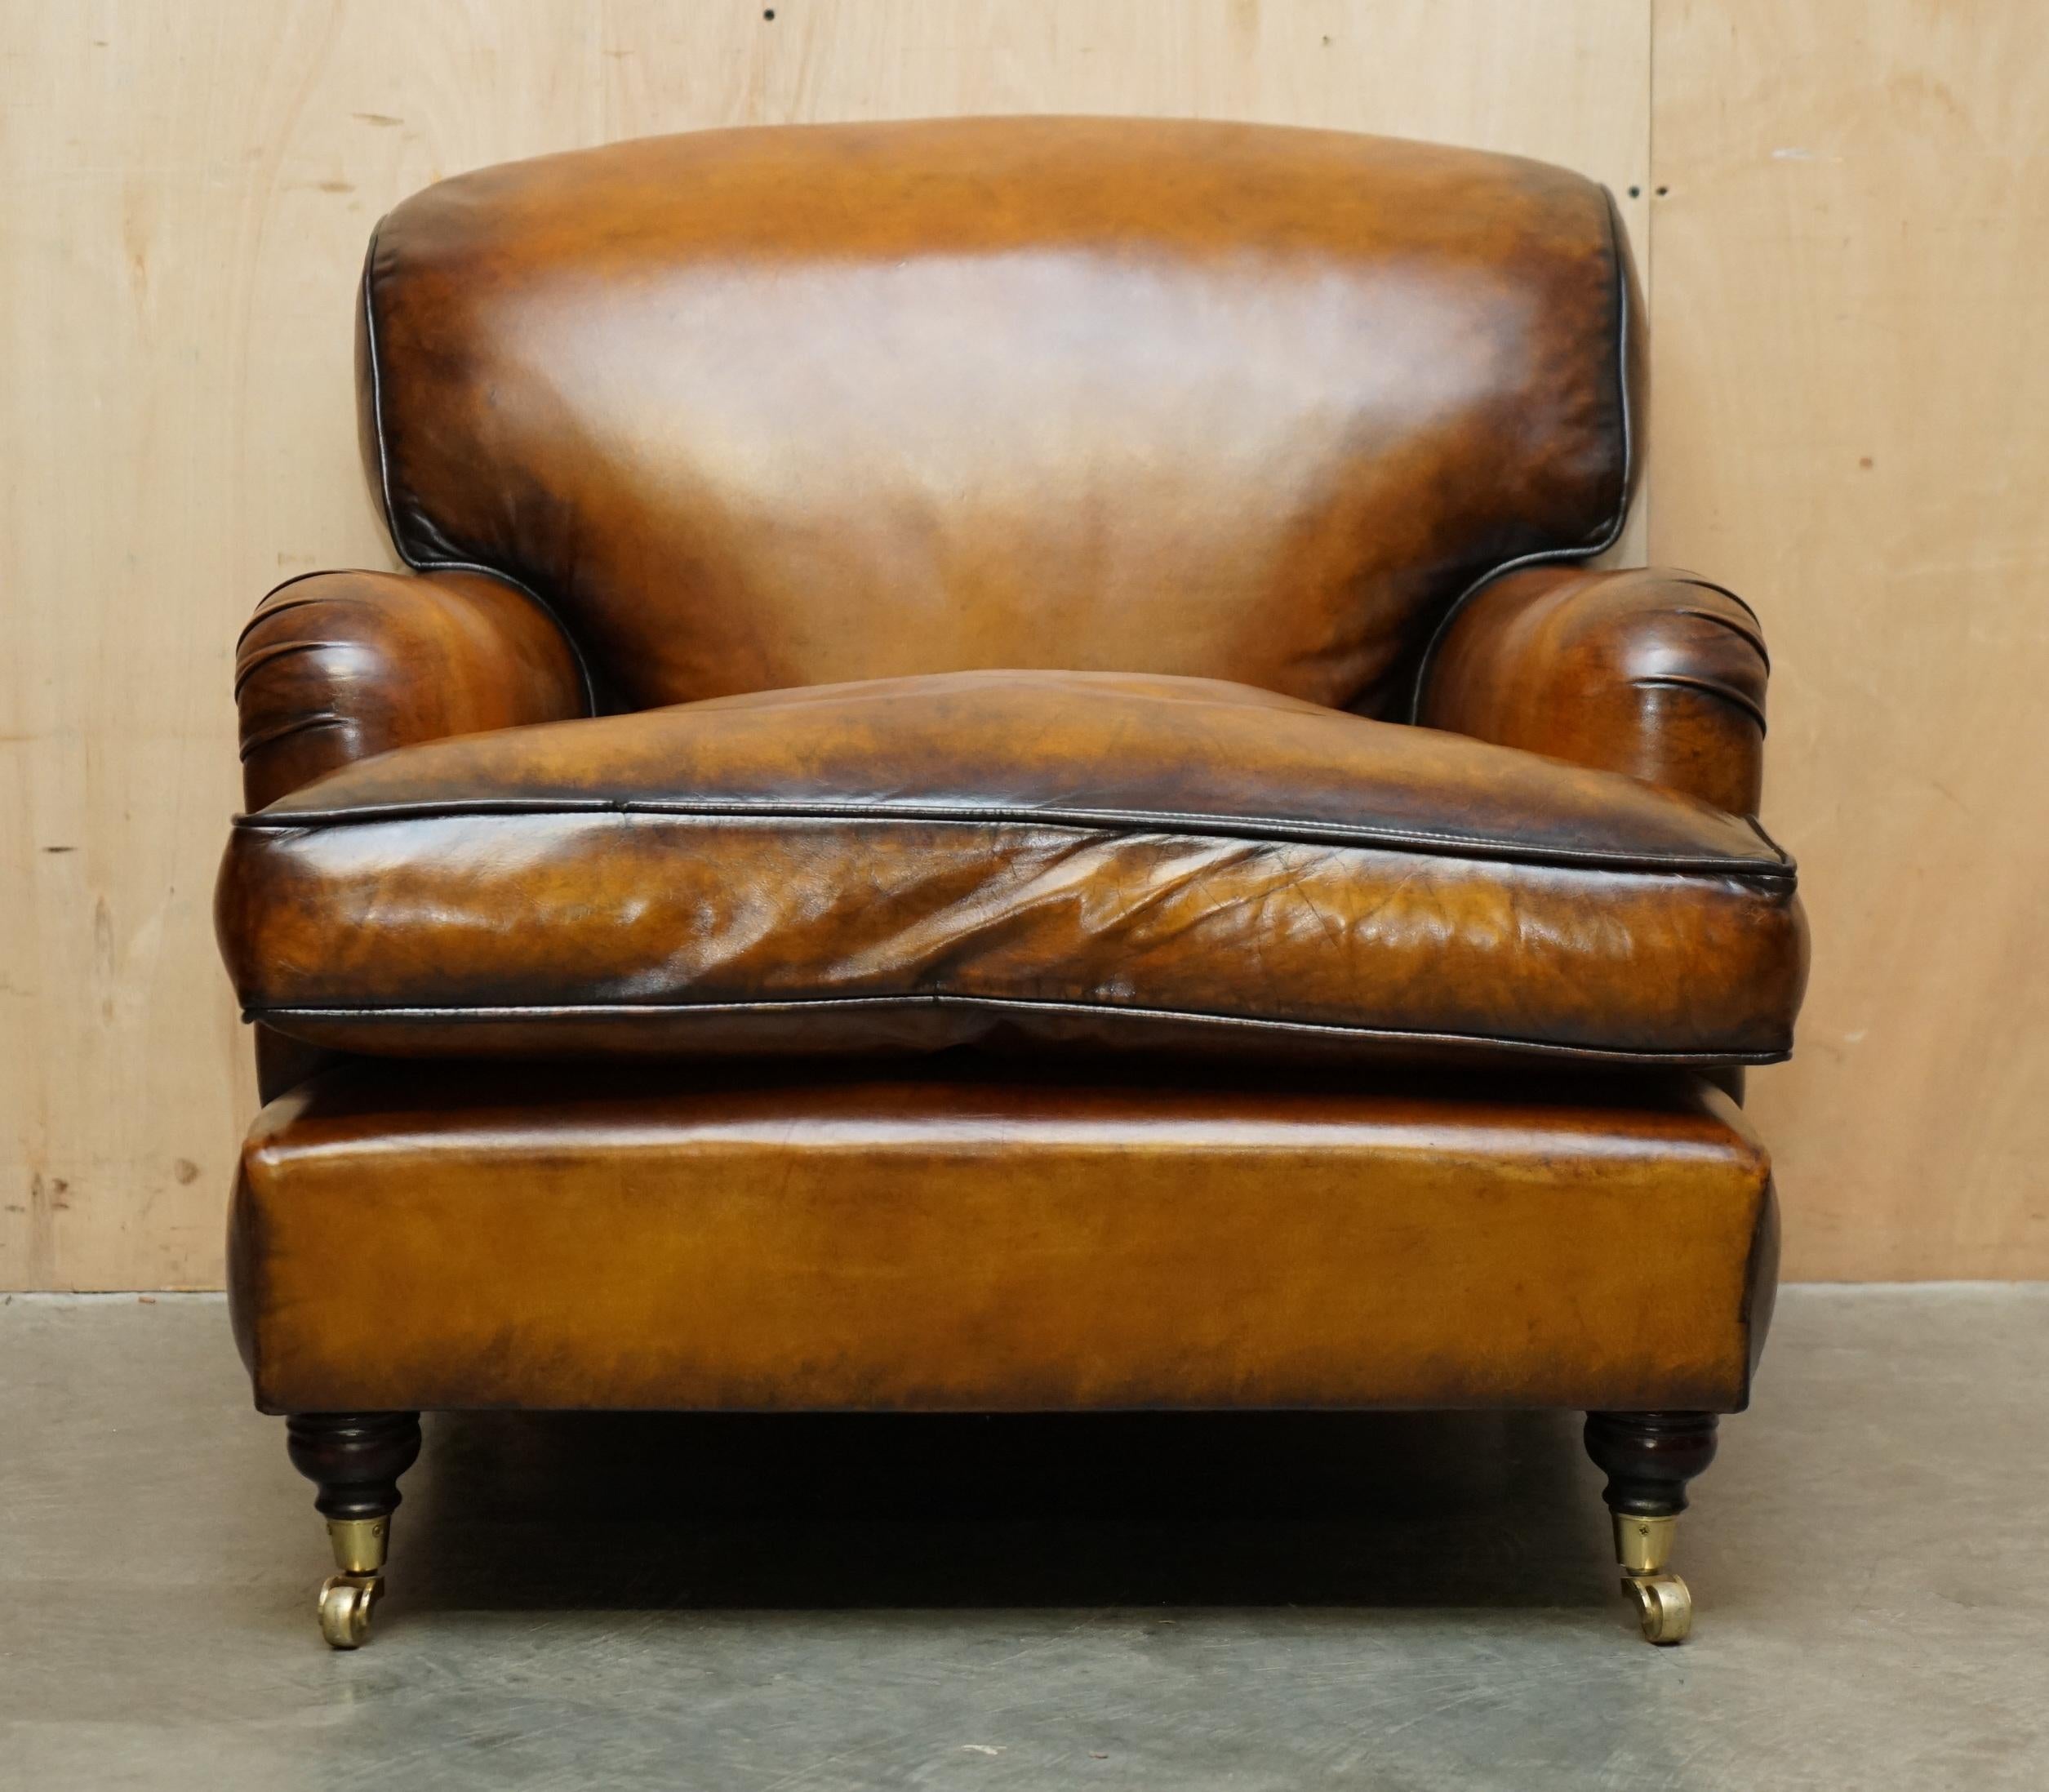 Royal House Antiques

The House Antiques a le plaisir d'offrir à la vente ce charmant fauteuil vintage entièrement restauré en cuir marron teint à la main de style Howard & Son avec un coussin surchargé de plumes qui fait partie d'une